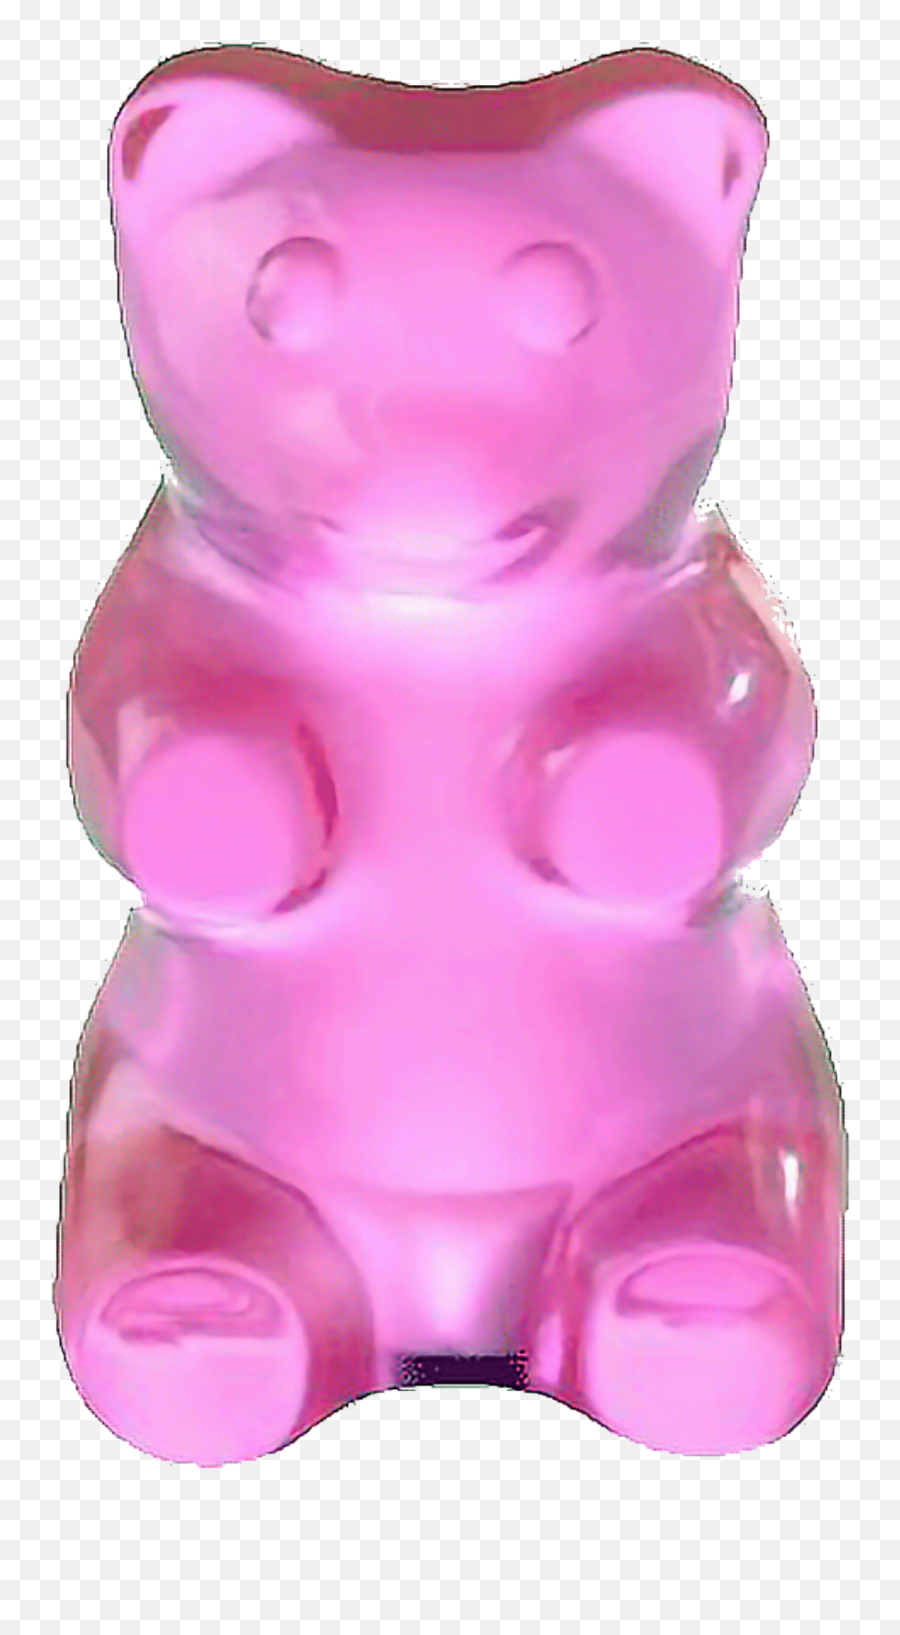 Gummybear Gummy Bear Yummies Yummy - Transparent Background Gummy Bear Transparent Emoji,Gummy Bear Emoji